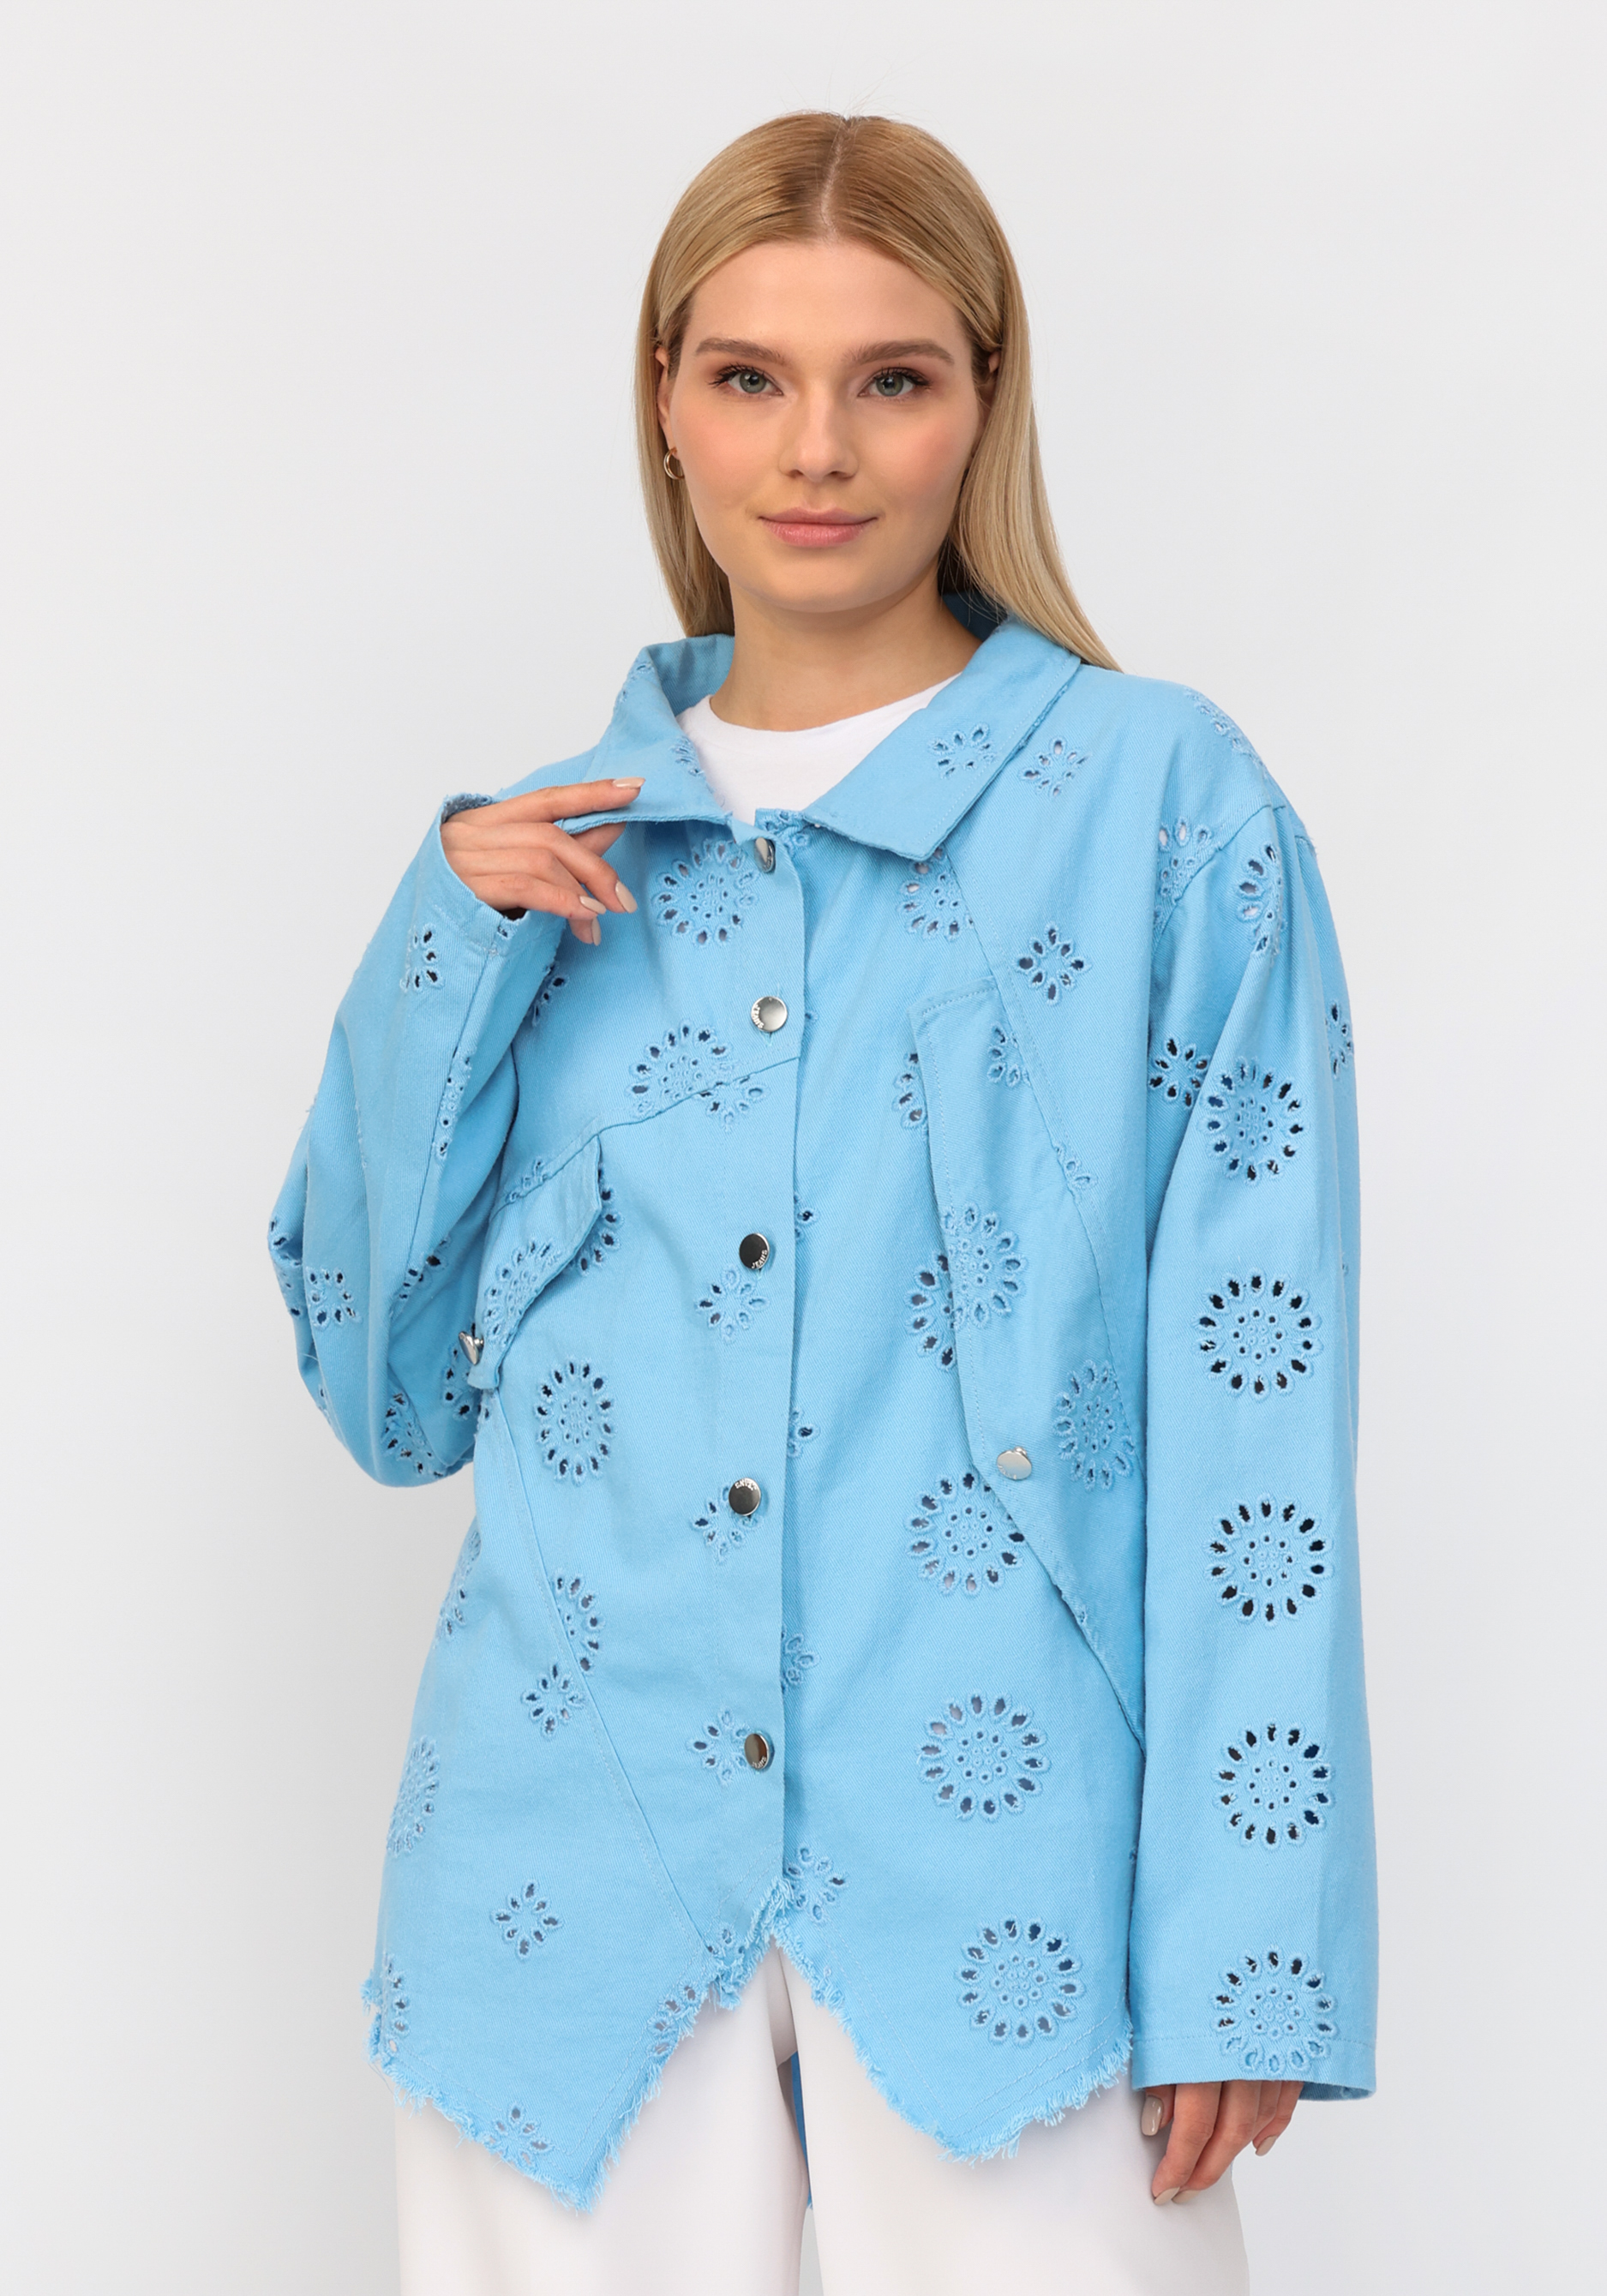 Джинсовая куртка с ришелье No name, размер 54-56, цвет голубой - фото 7